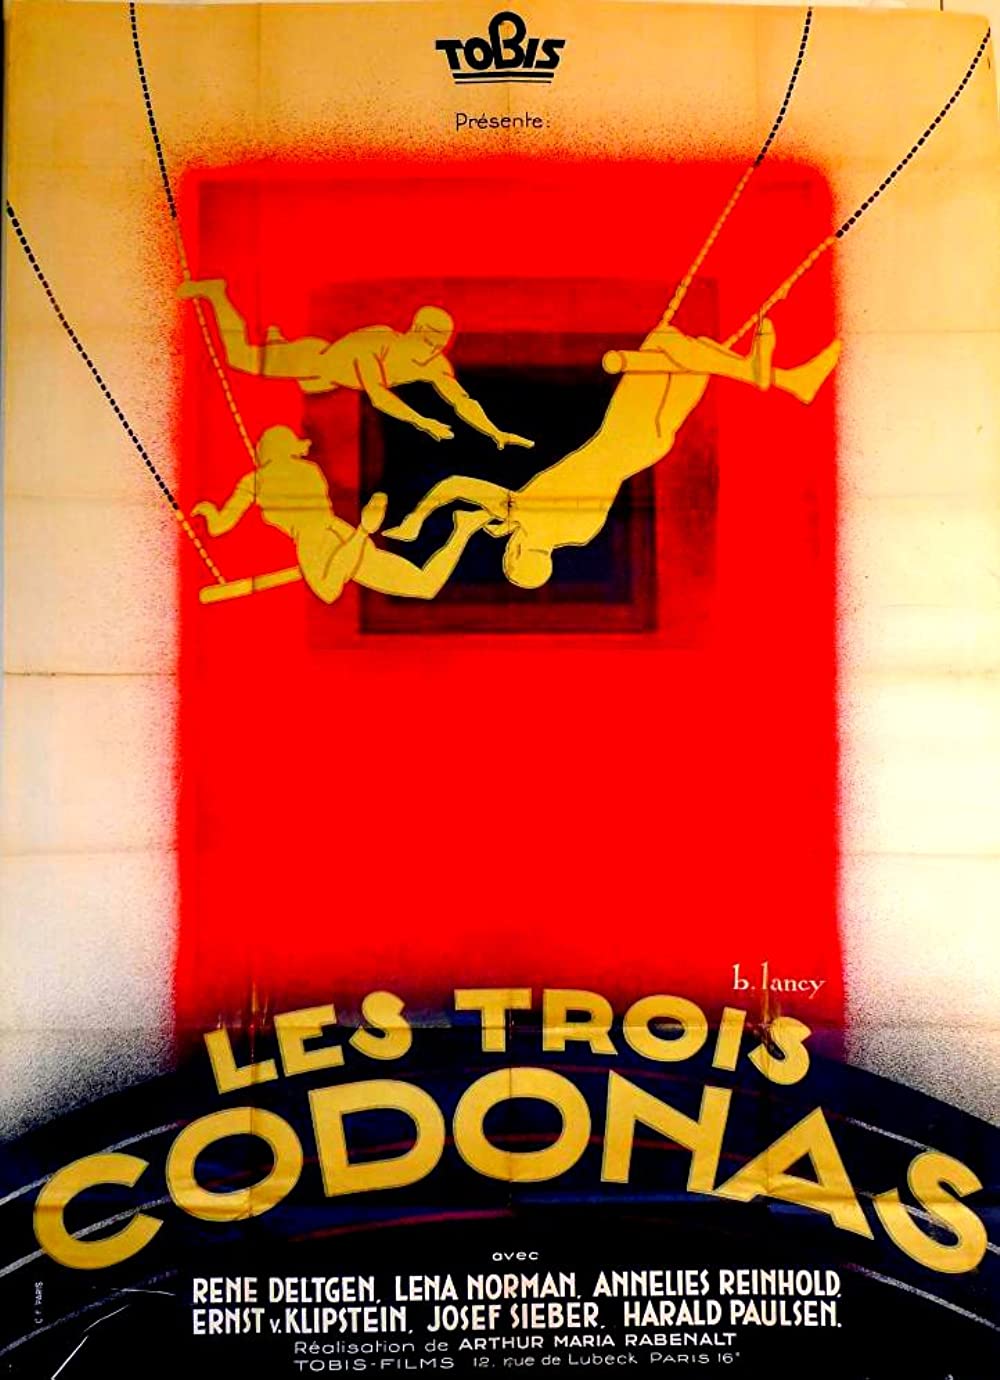 Filmbeschreibung zu Die drei Codonas